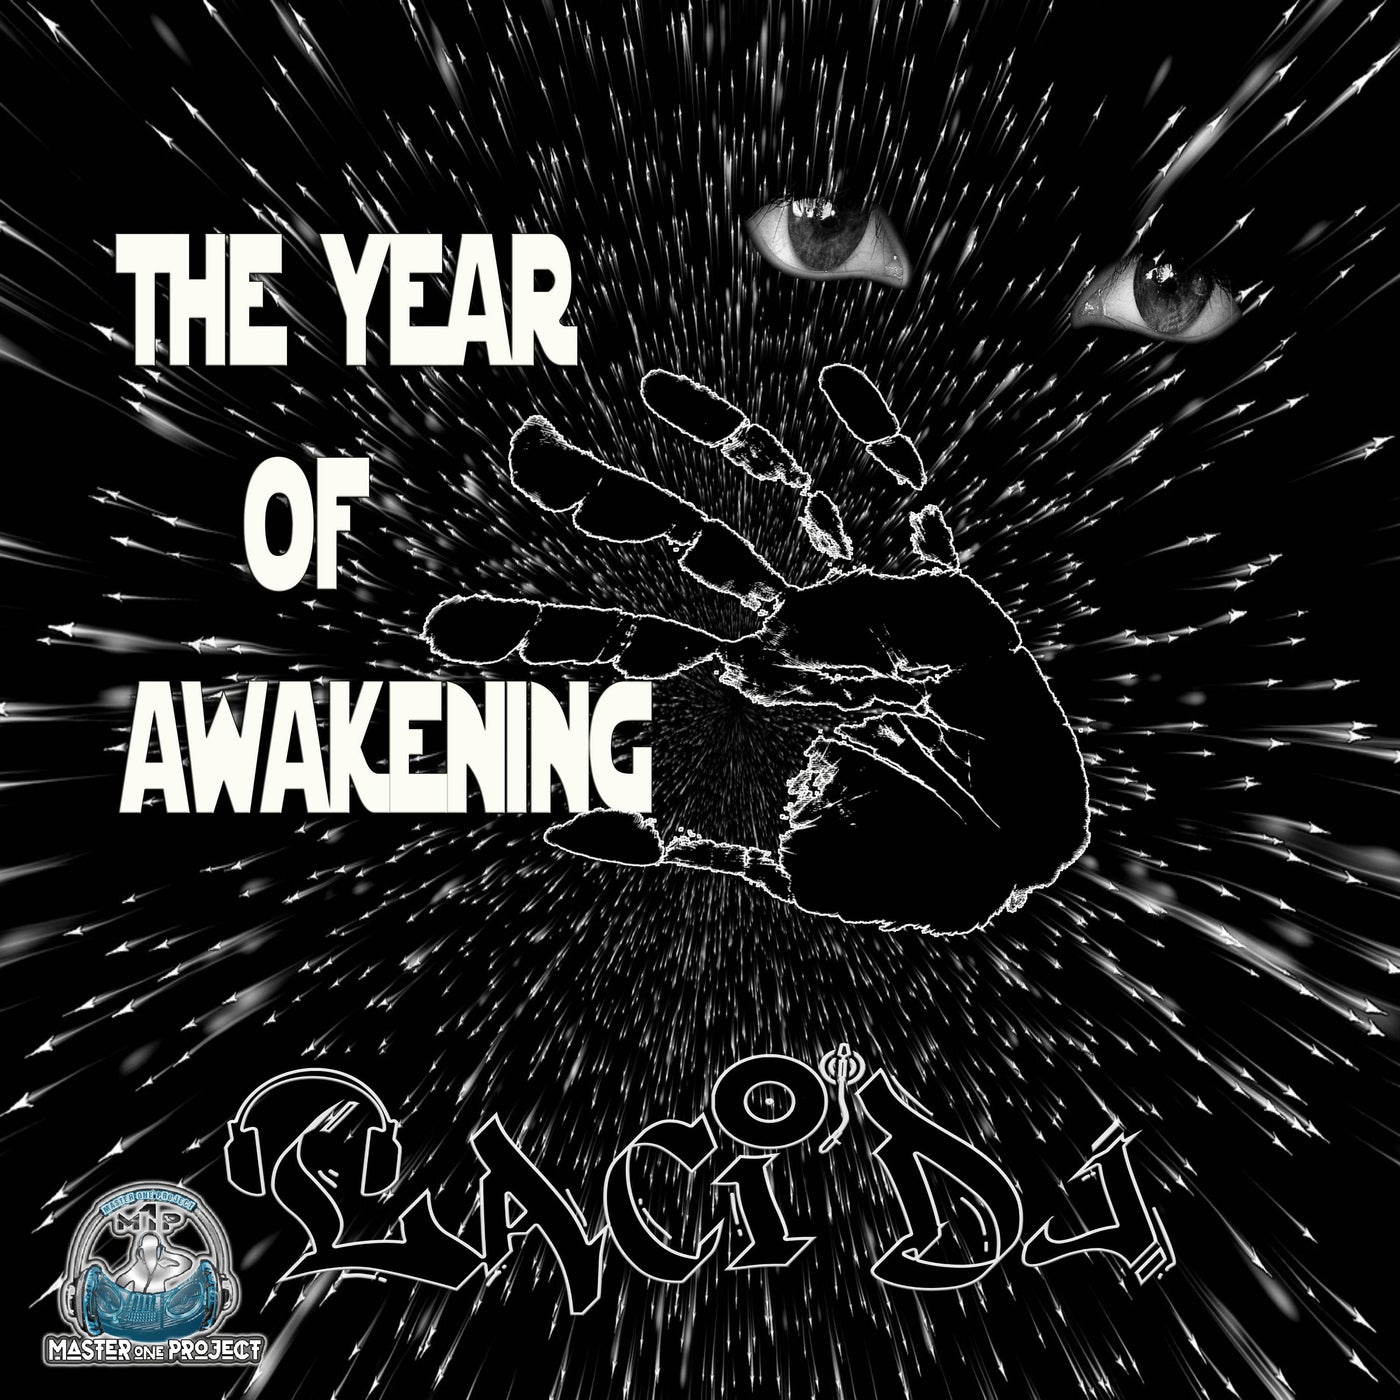 The Year of Awakening